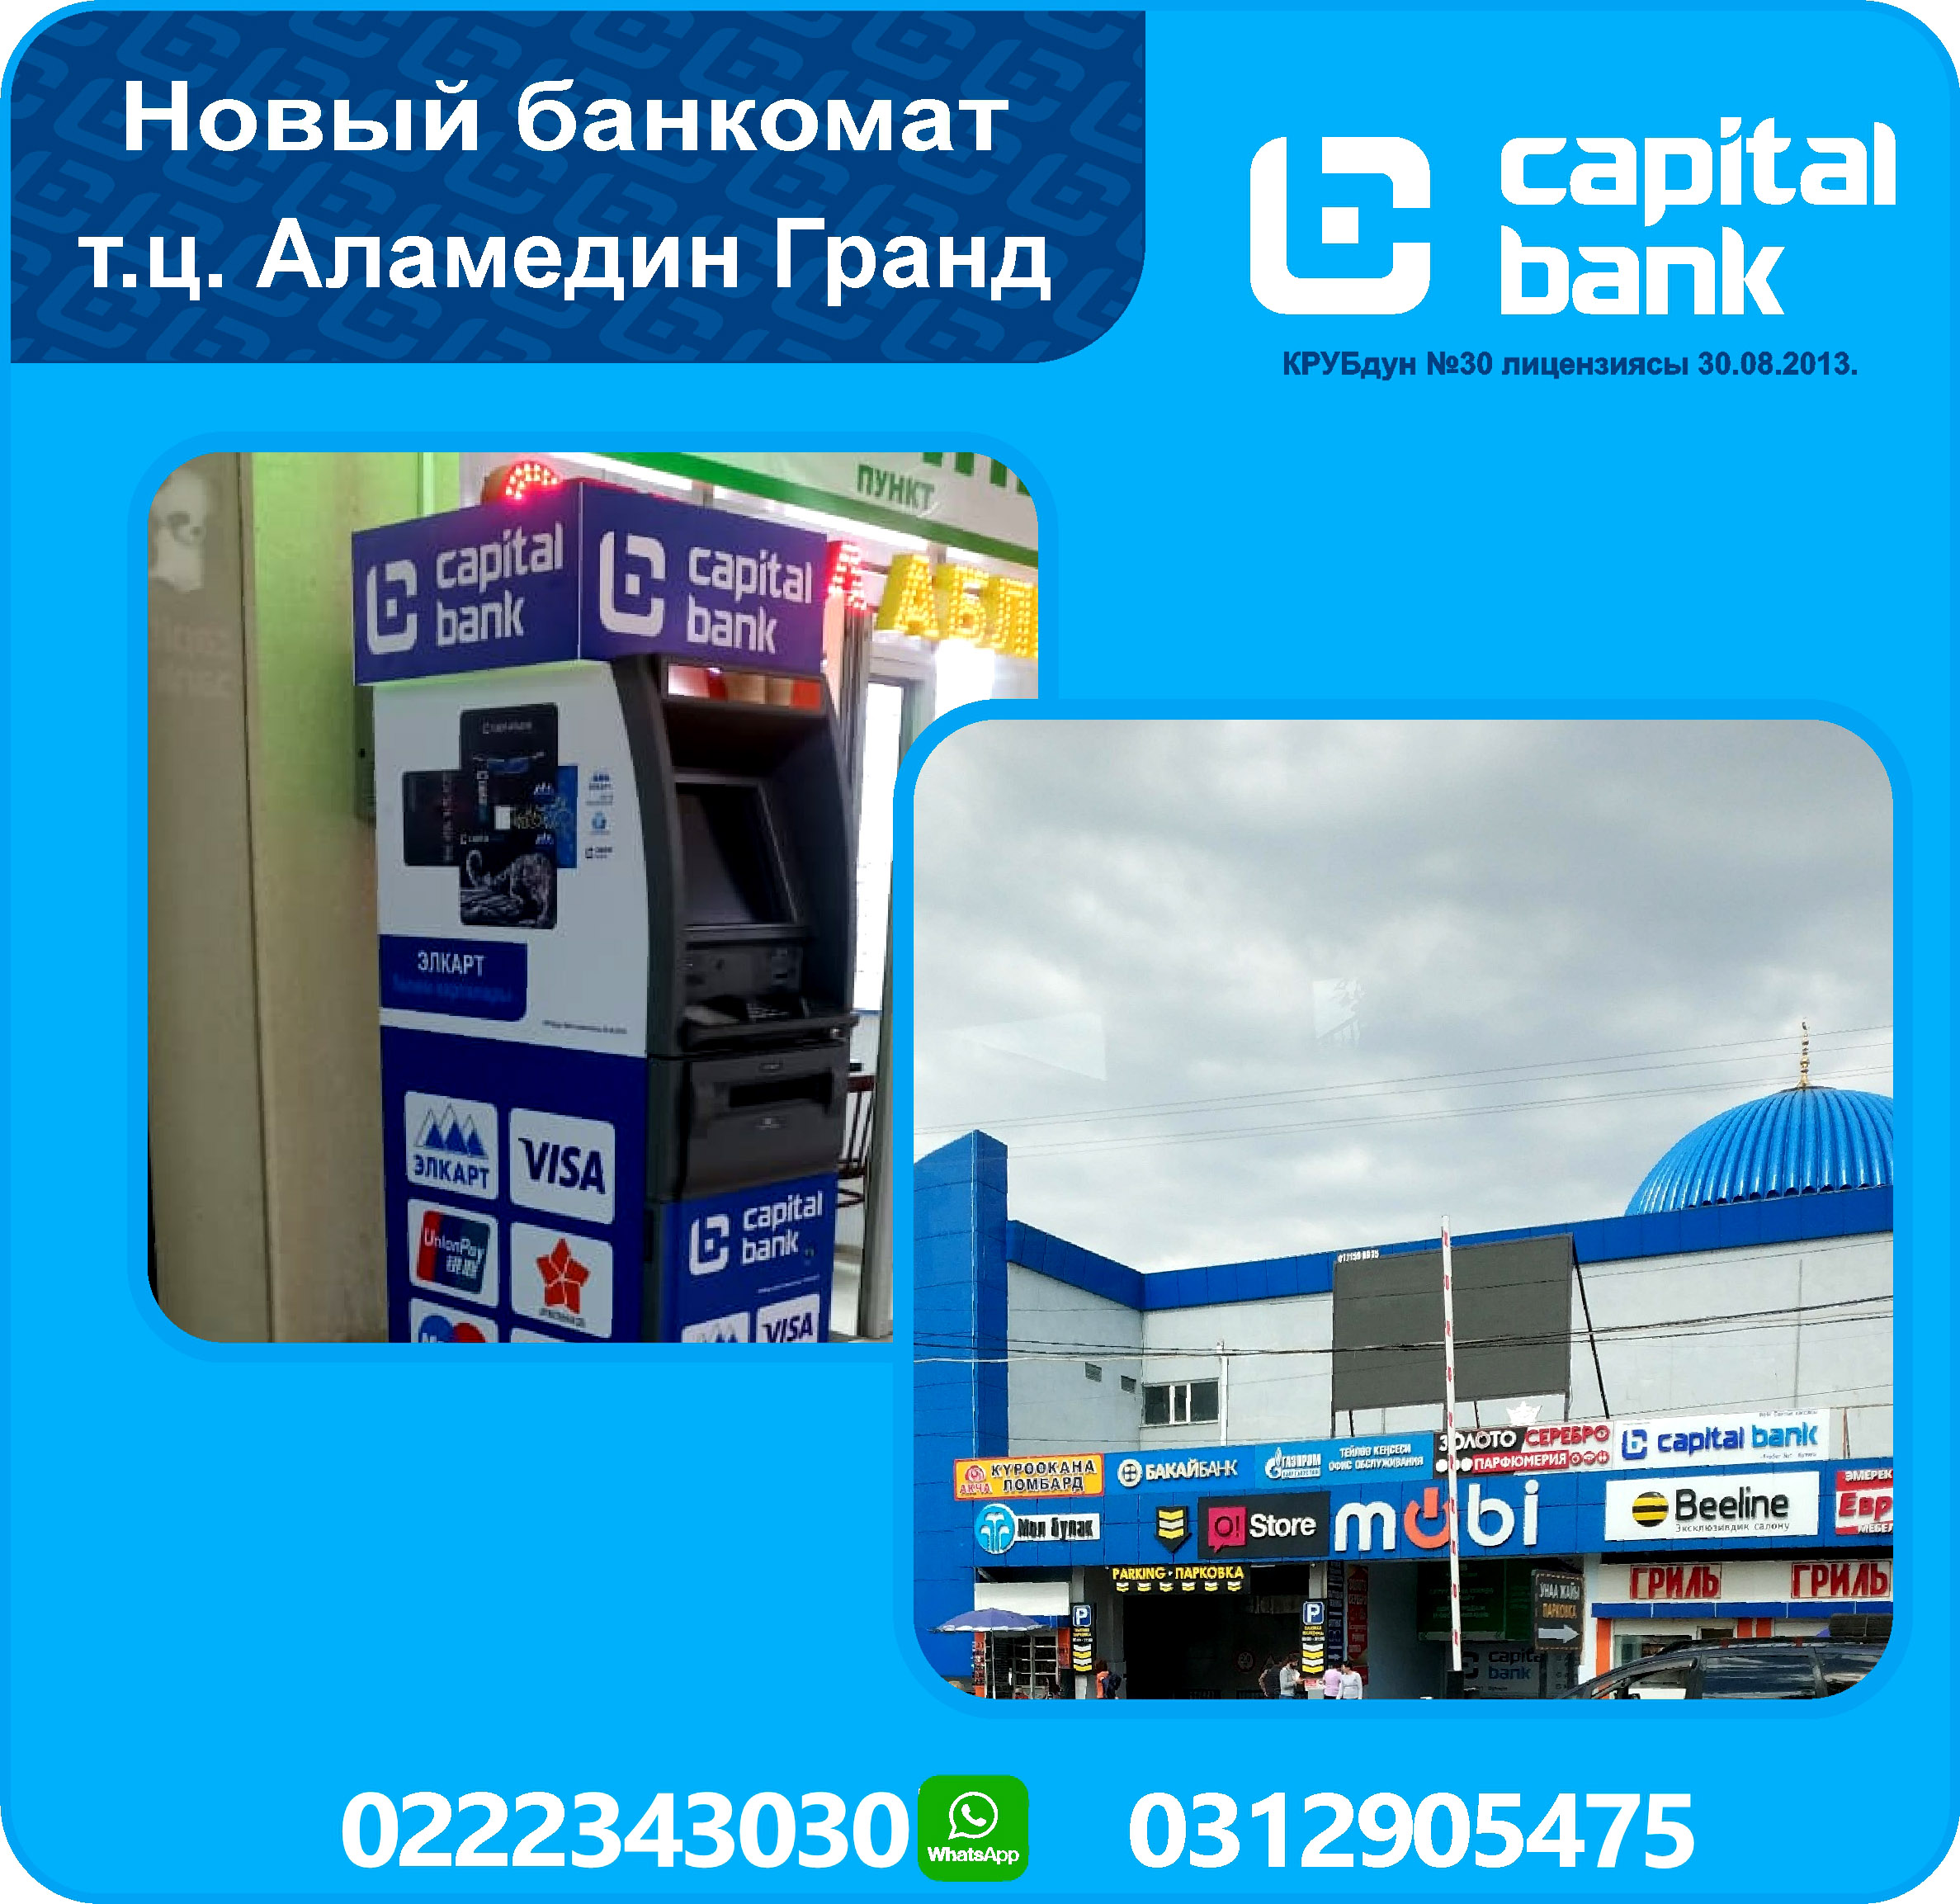 новый банкомат